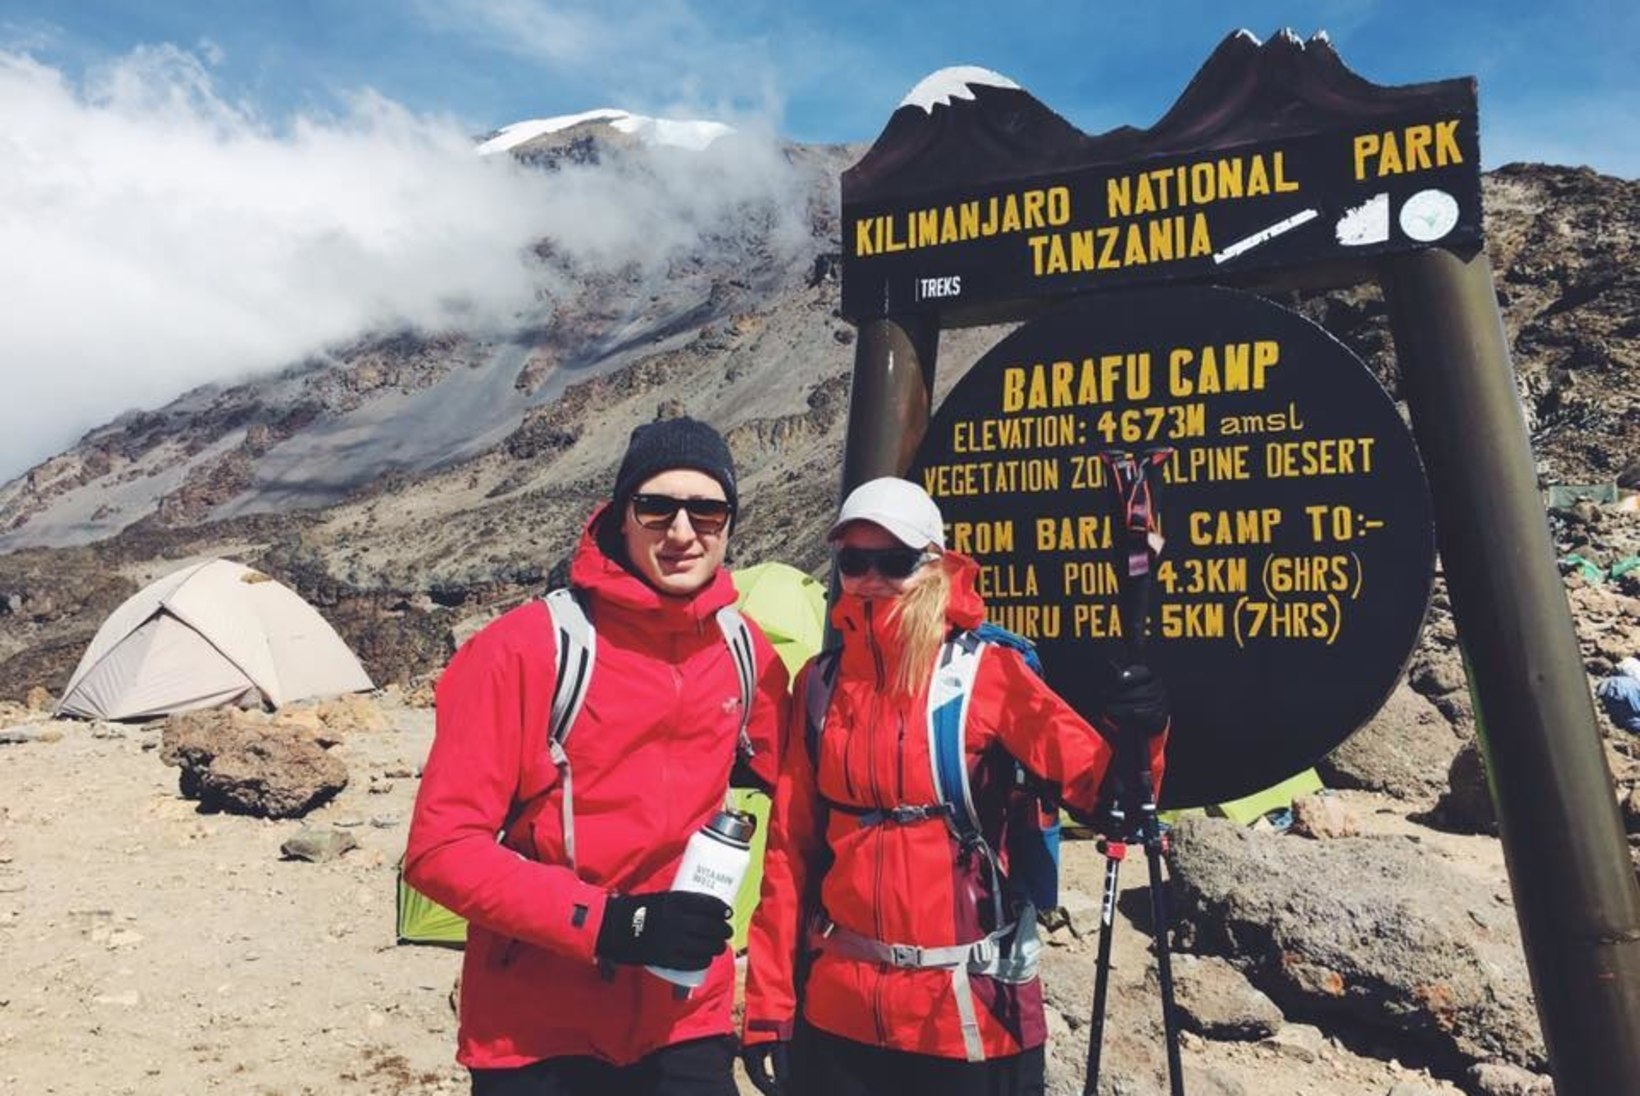 KARL-ERIK TAUKAR: Kilimanjaro matkal oli raskeim rõskes telgis ärgates endale sisendada, et olen puhkusel